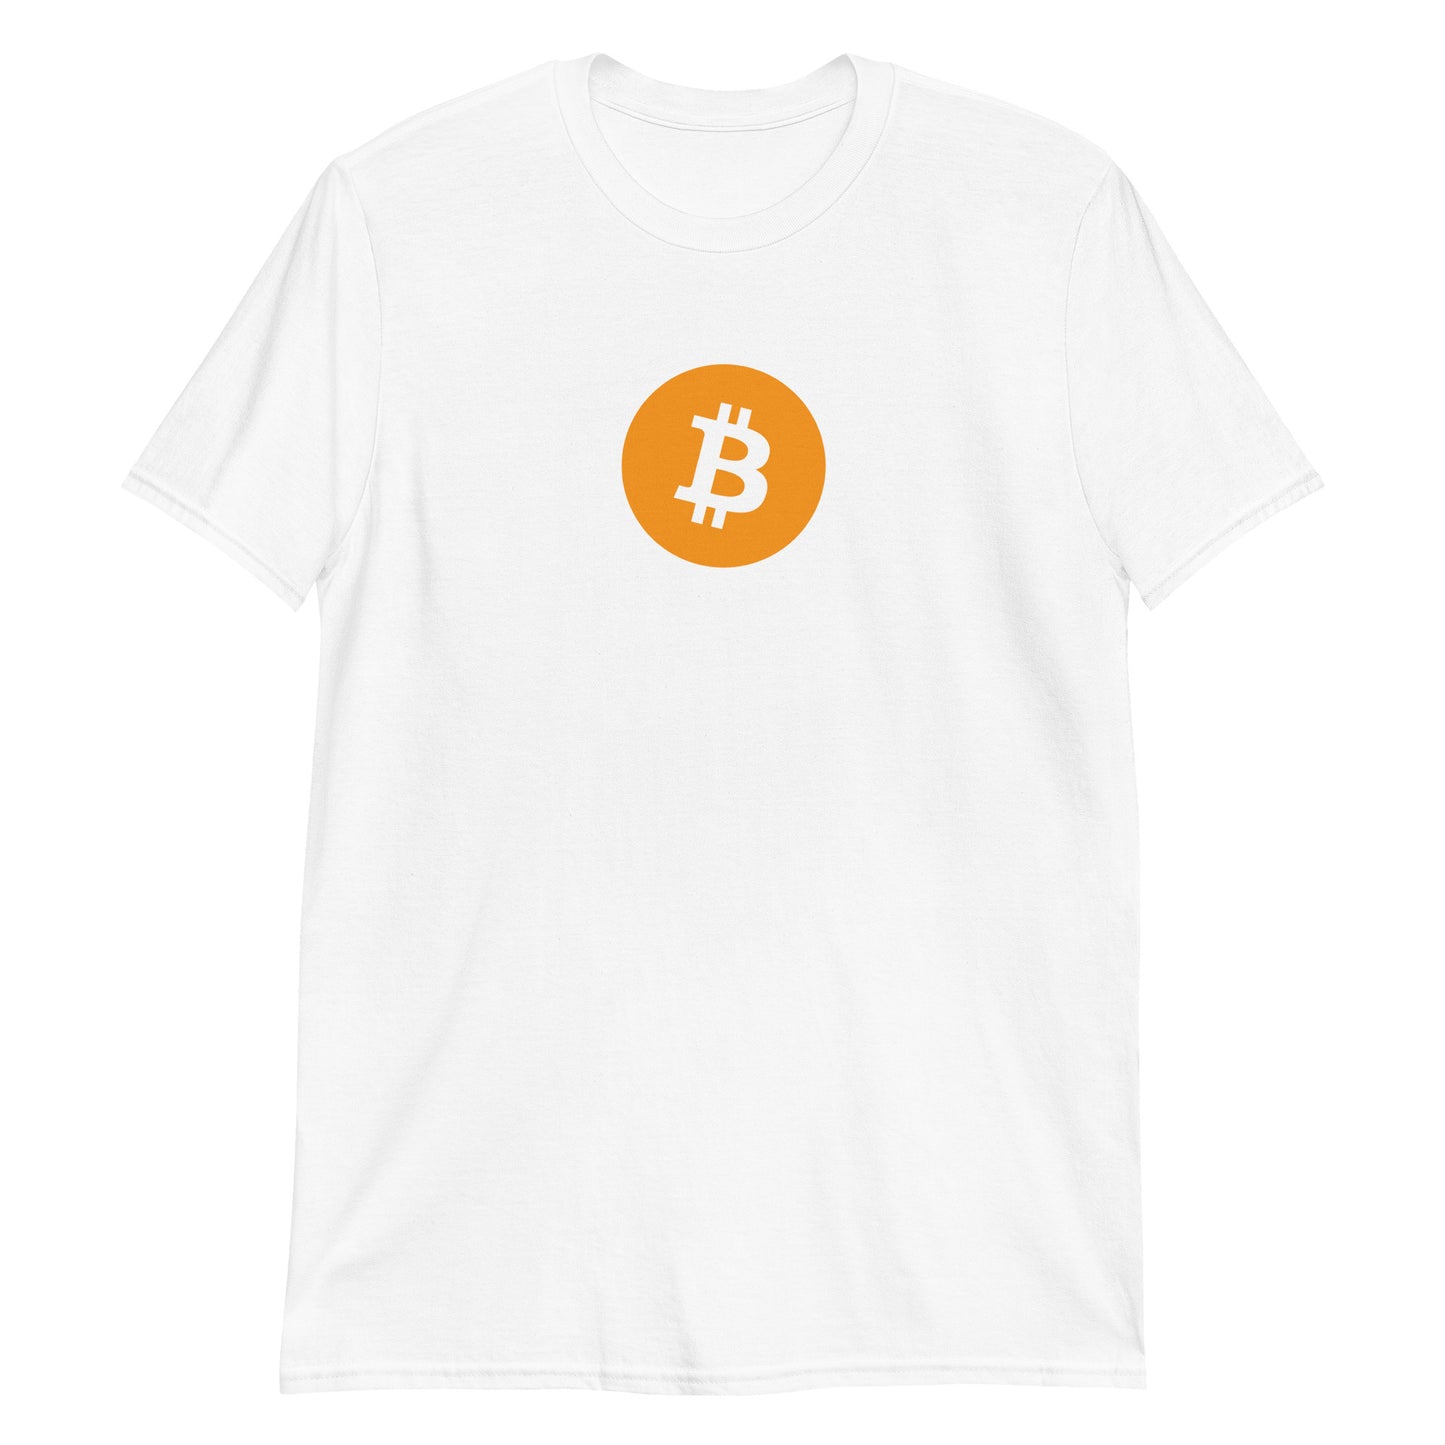 Bitcoin Unisex T-Shirt